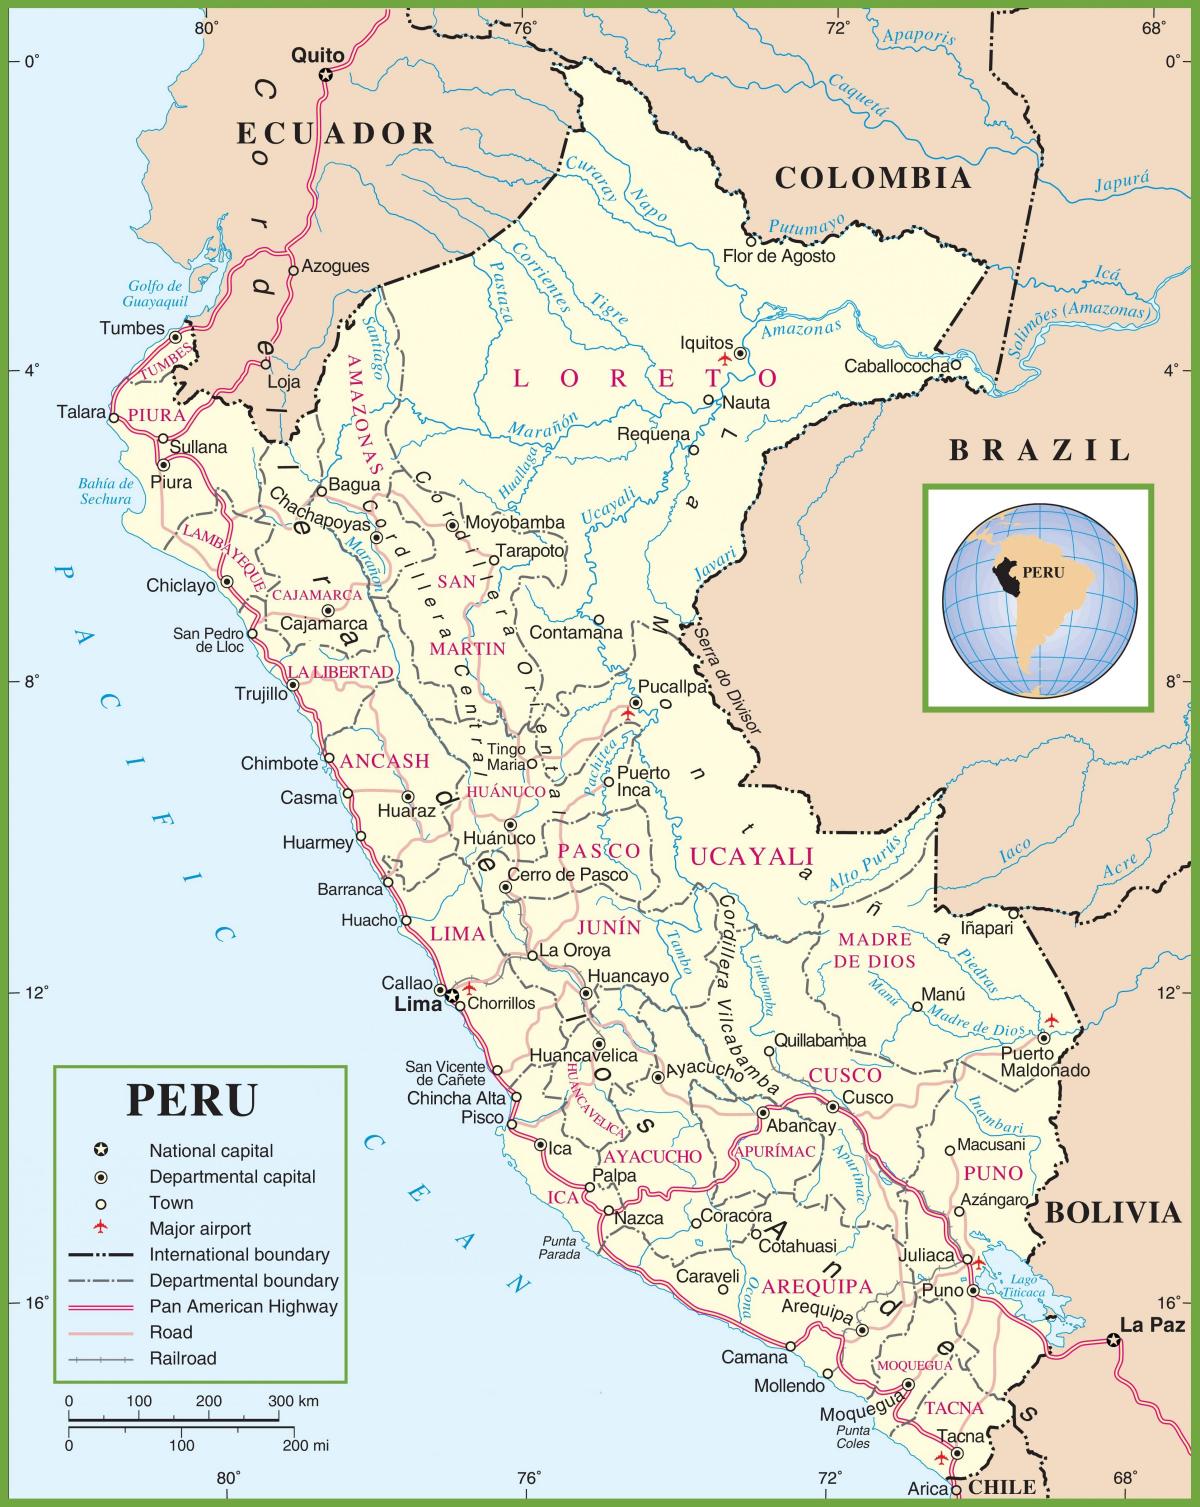 χάρτης του πολιτικού χάρτη του Περού